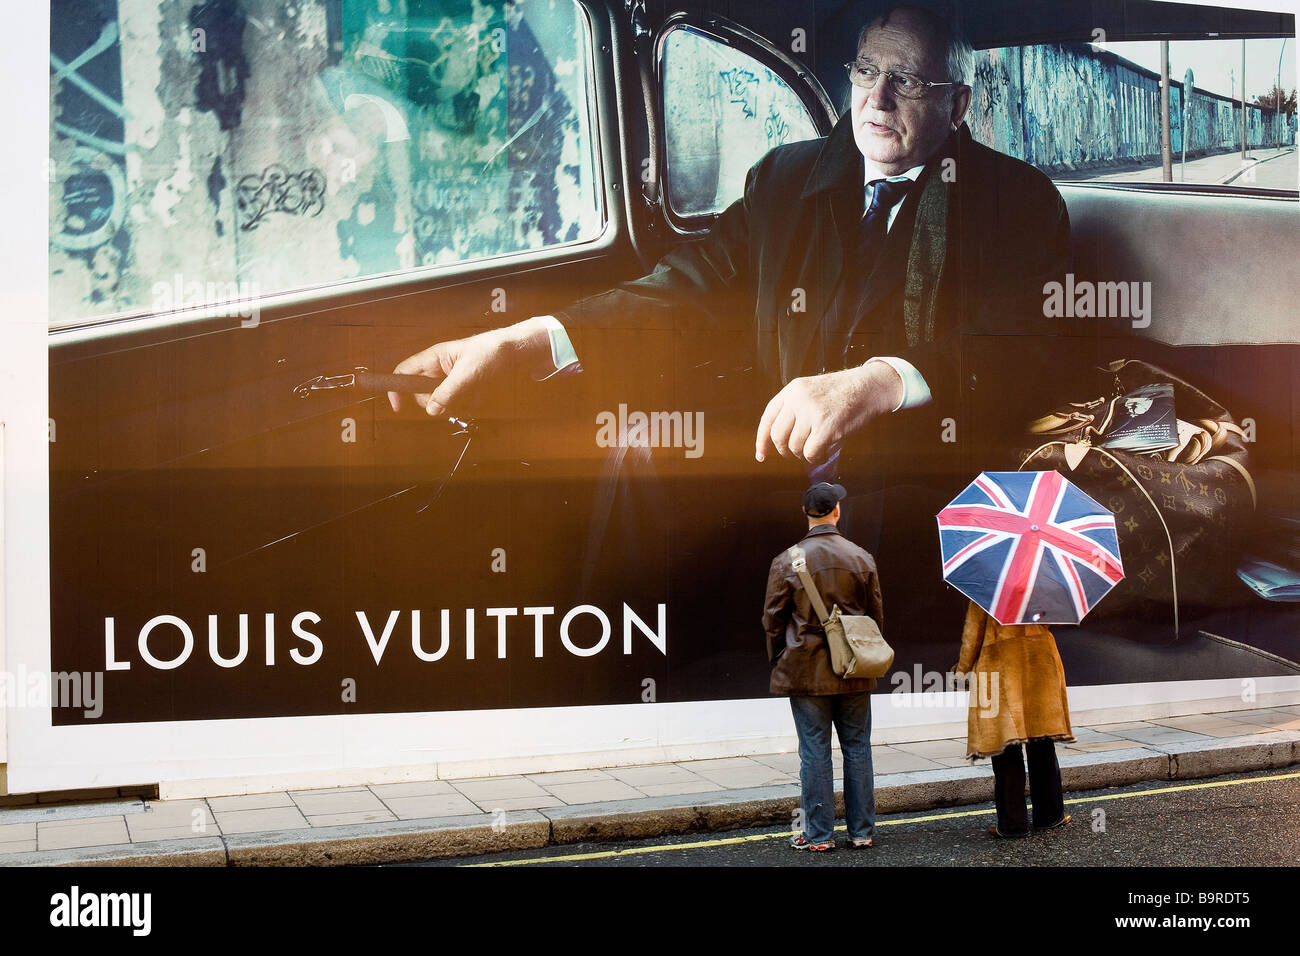 Louis Vuitton - Gorbachev (French)